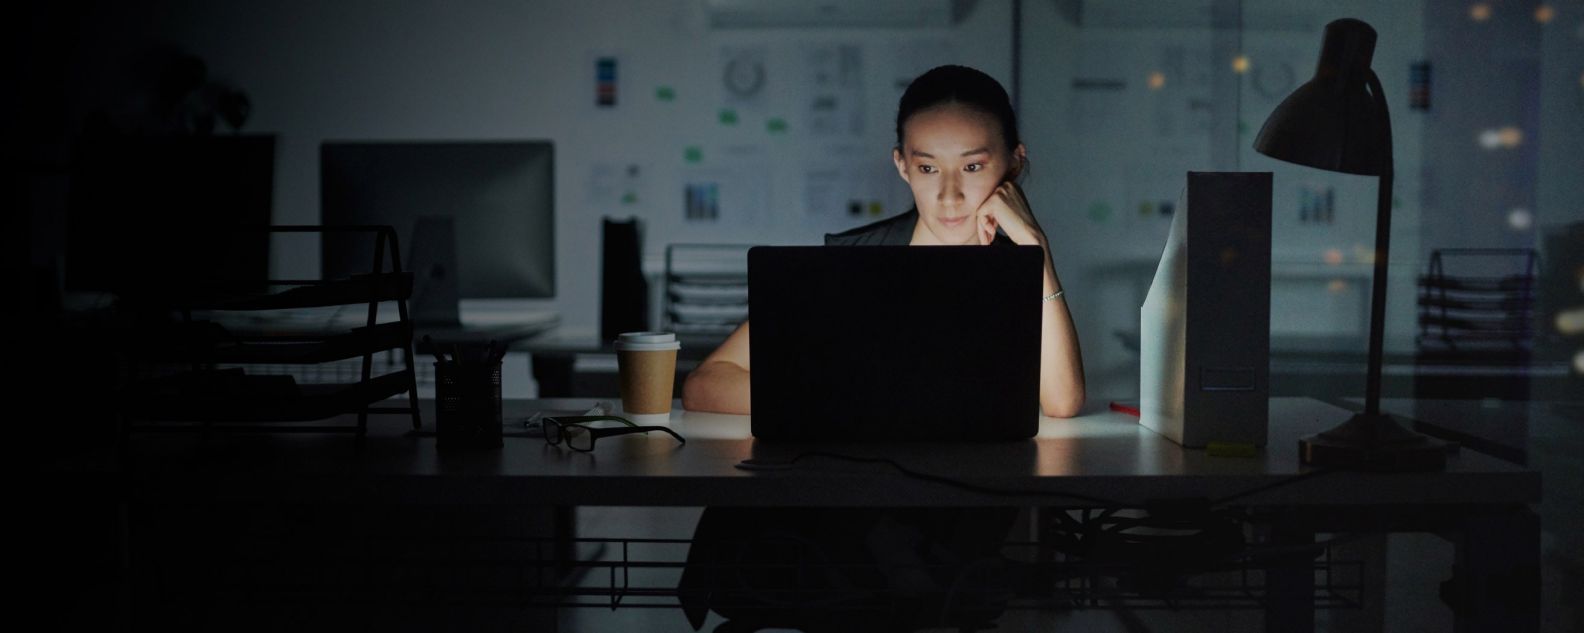 Une femme travaille concentrée avec son ordinateur portable dans une pièce sombre